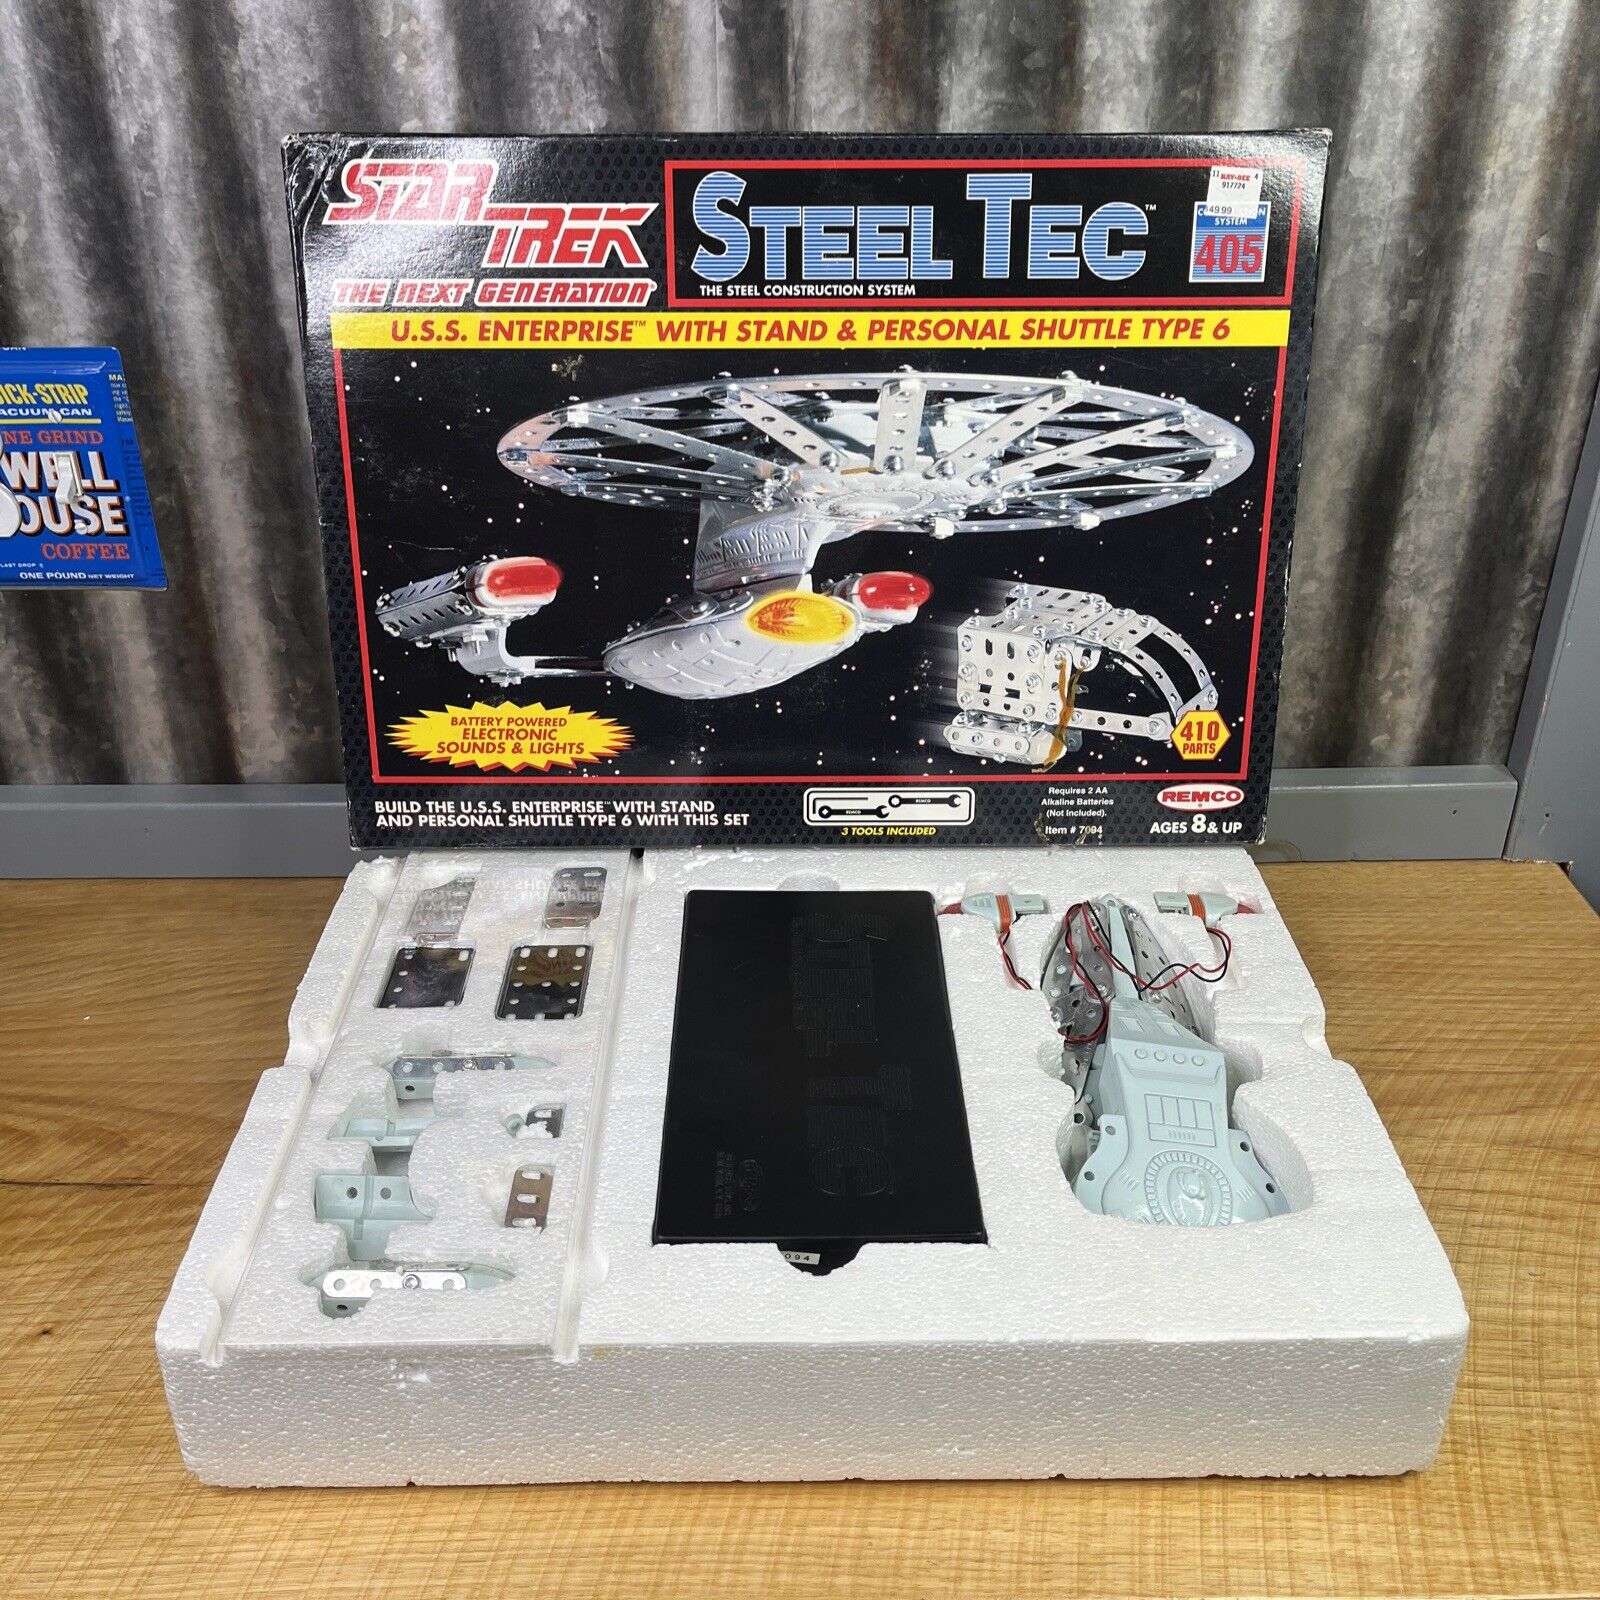 Steel Tec Star Trek Next Generation Enterprise & Shuttle Item# 7094 REMCO Tested